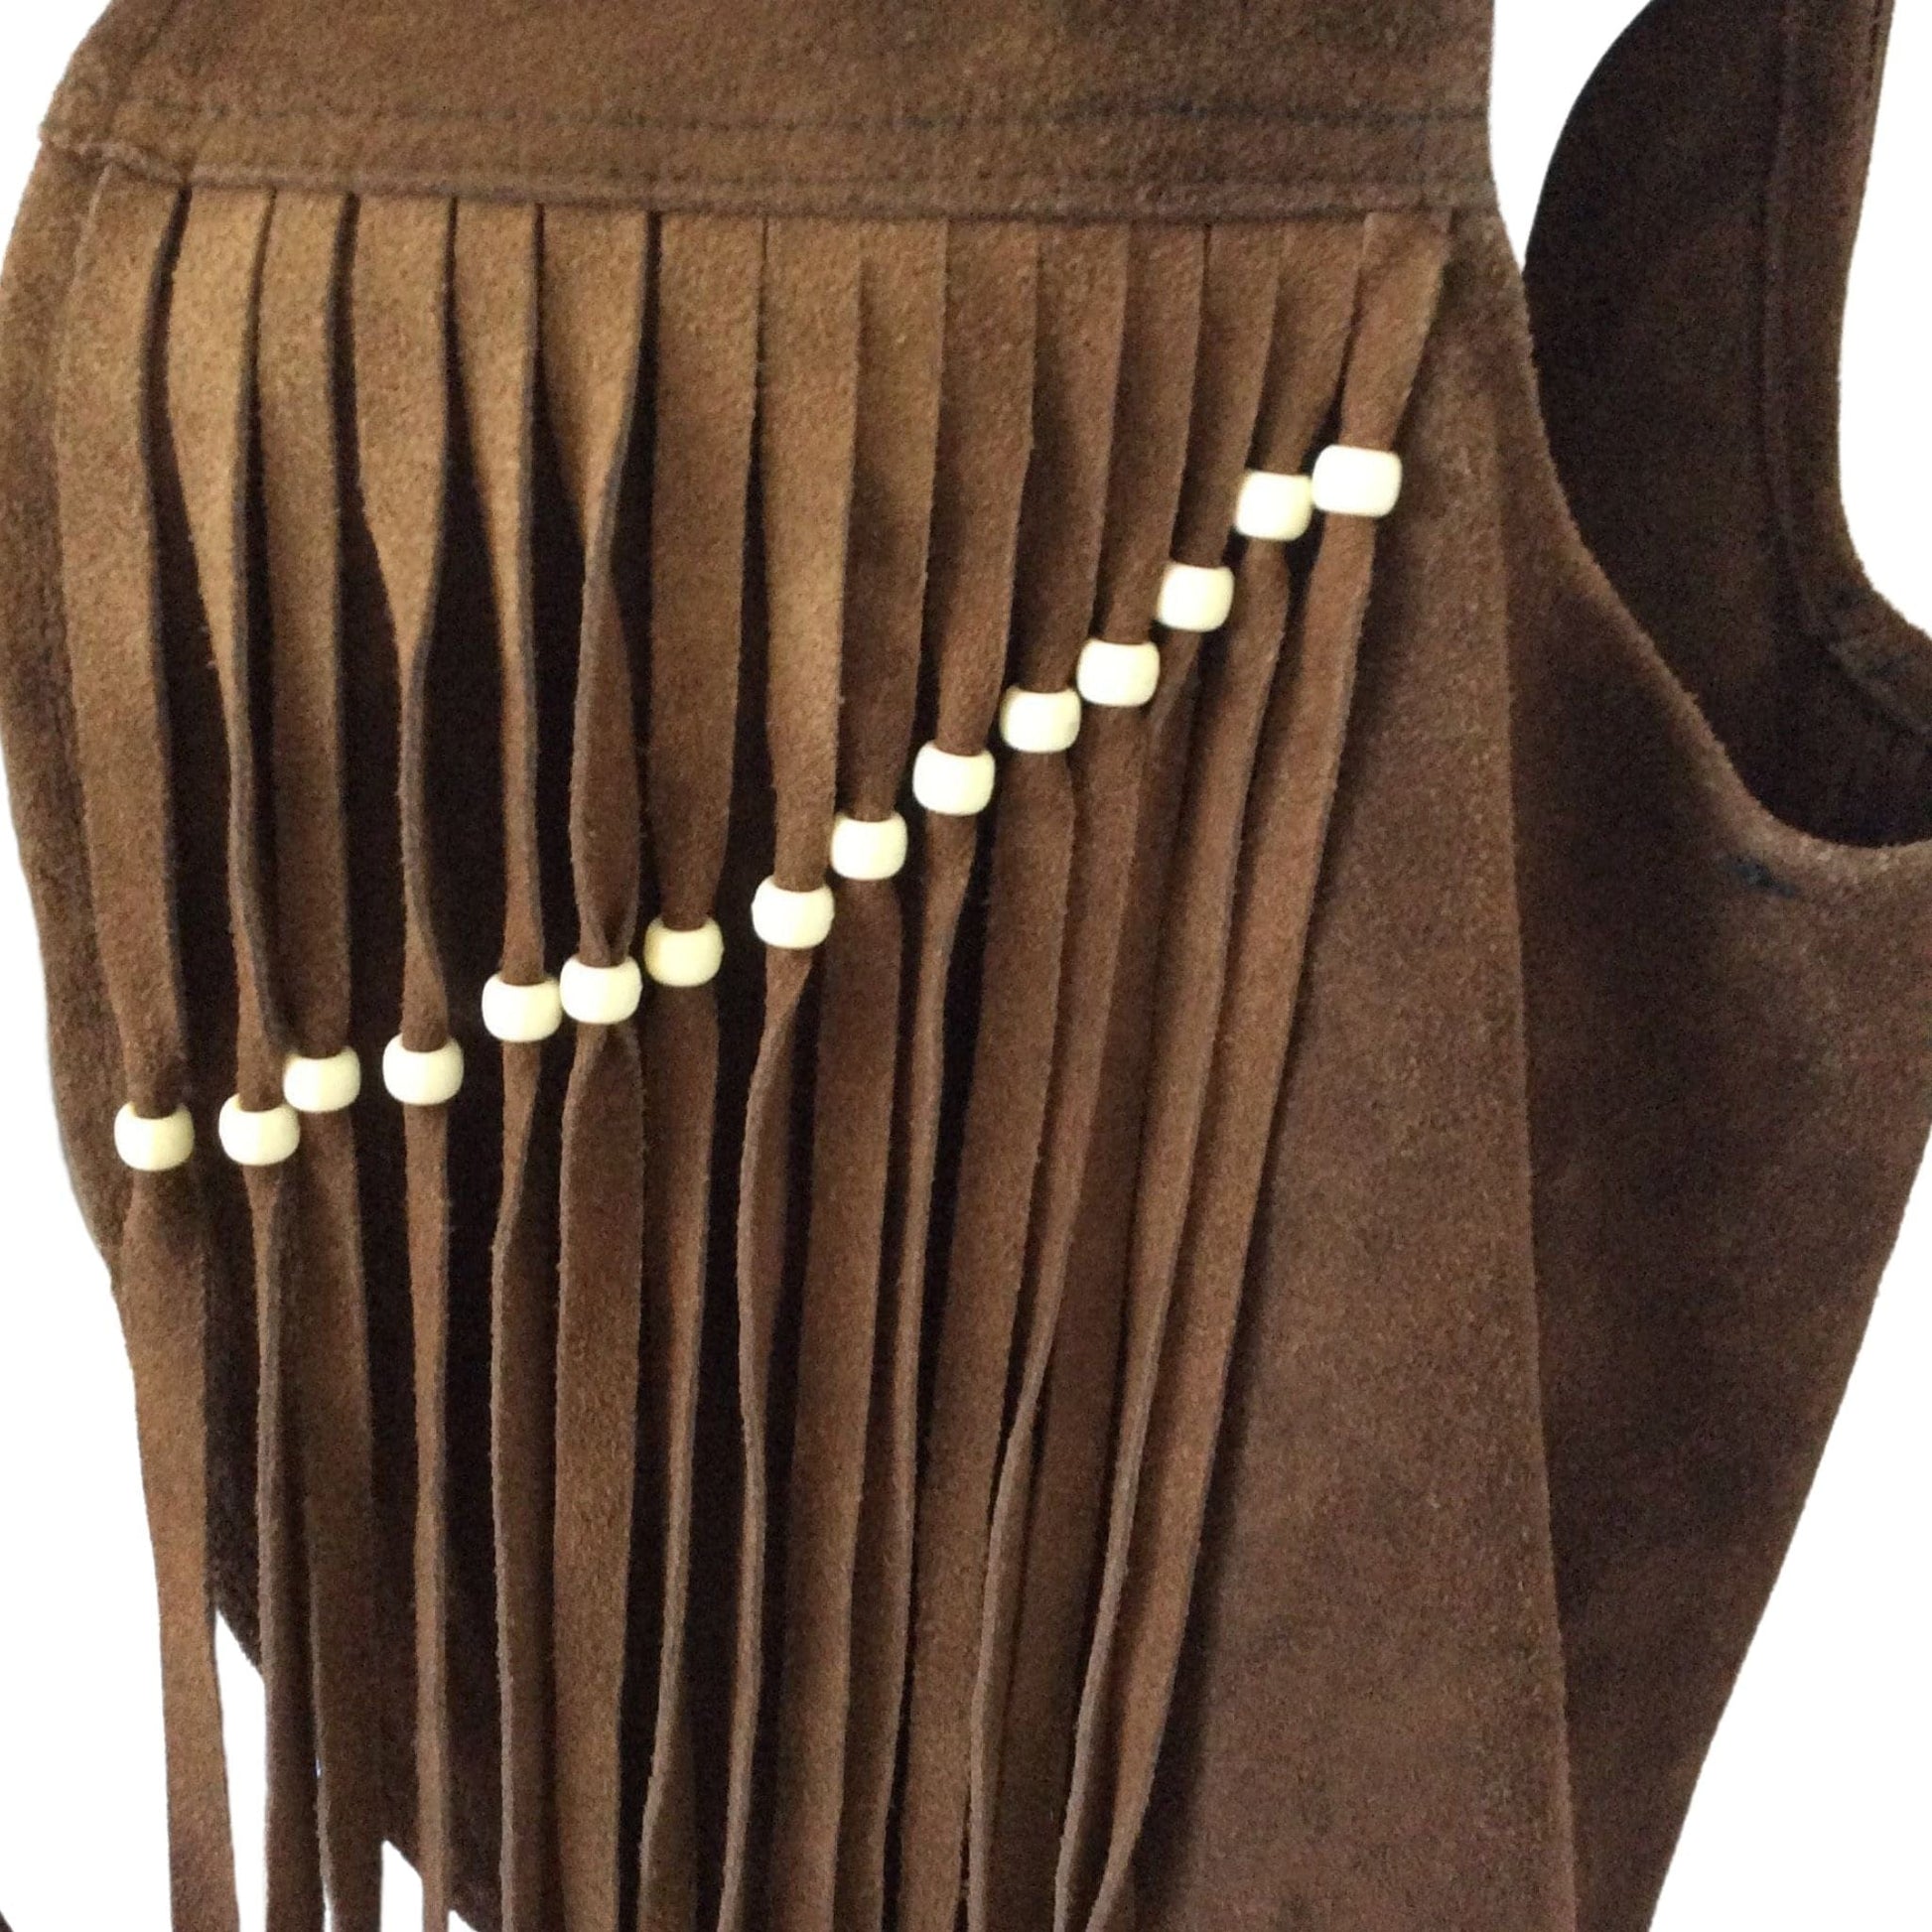 Vintage Fringed Leather Vest Medium / Brown / Vintage 1970s